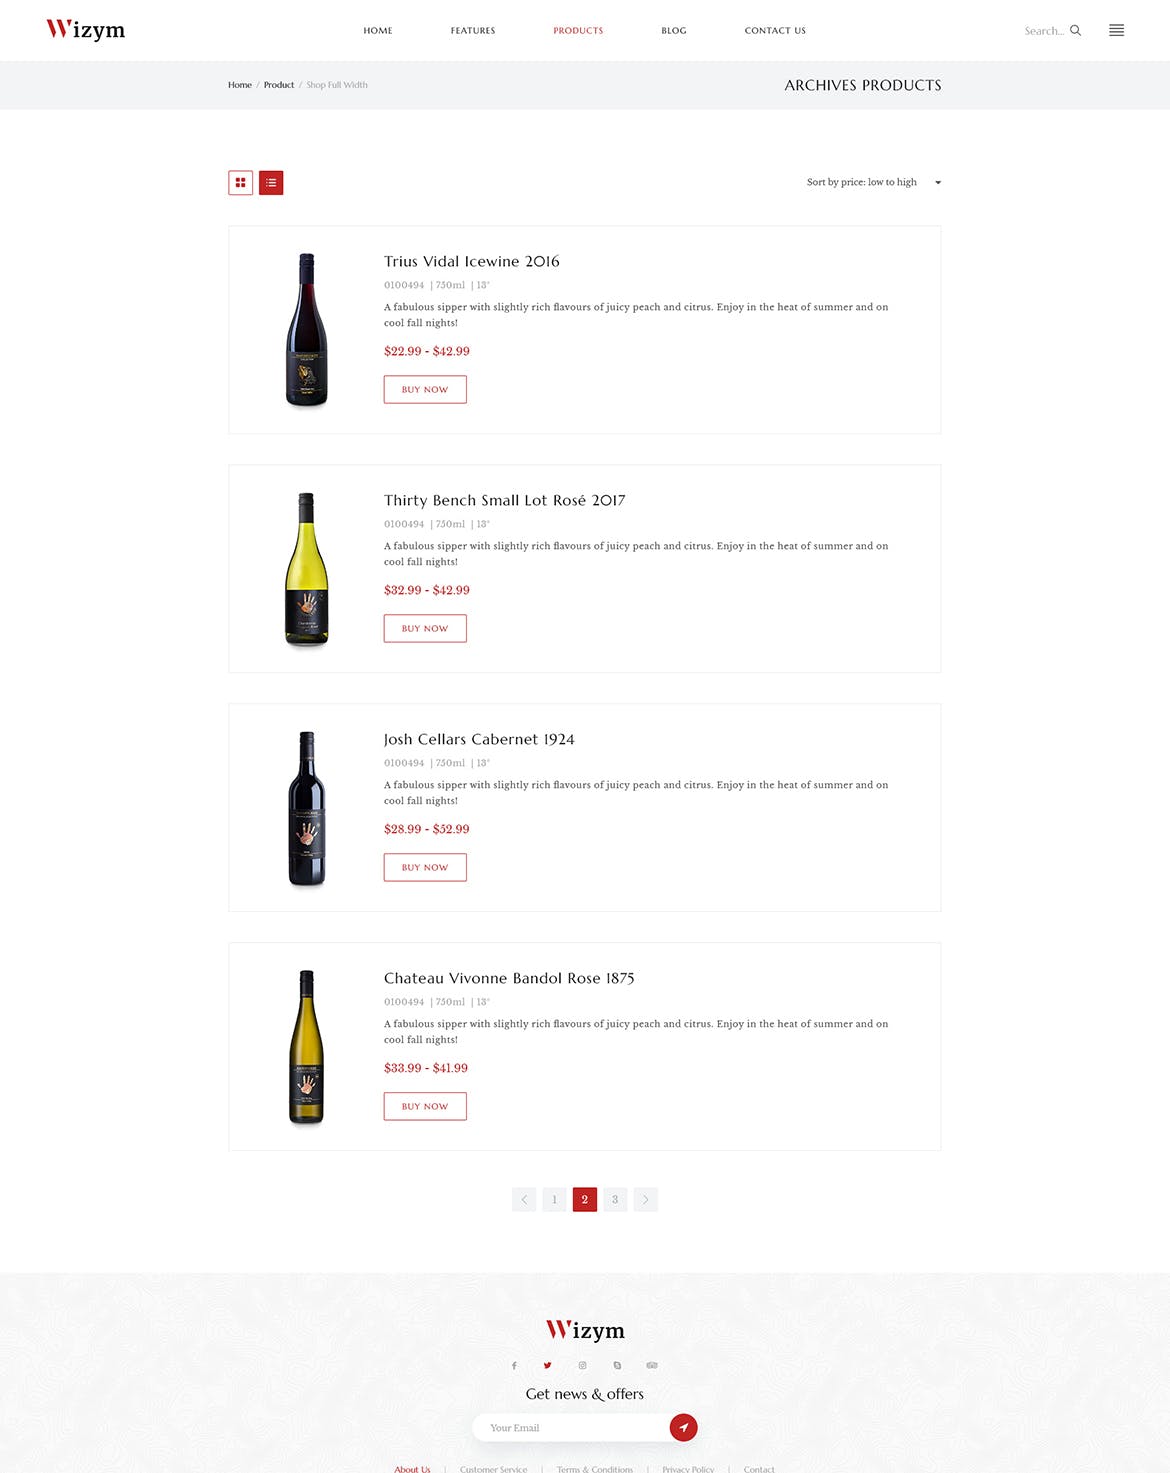 葡萄酒品牌网站设计PSD模板 Wizym | Wine & Winery PSD Template插图(4)